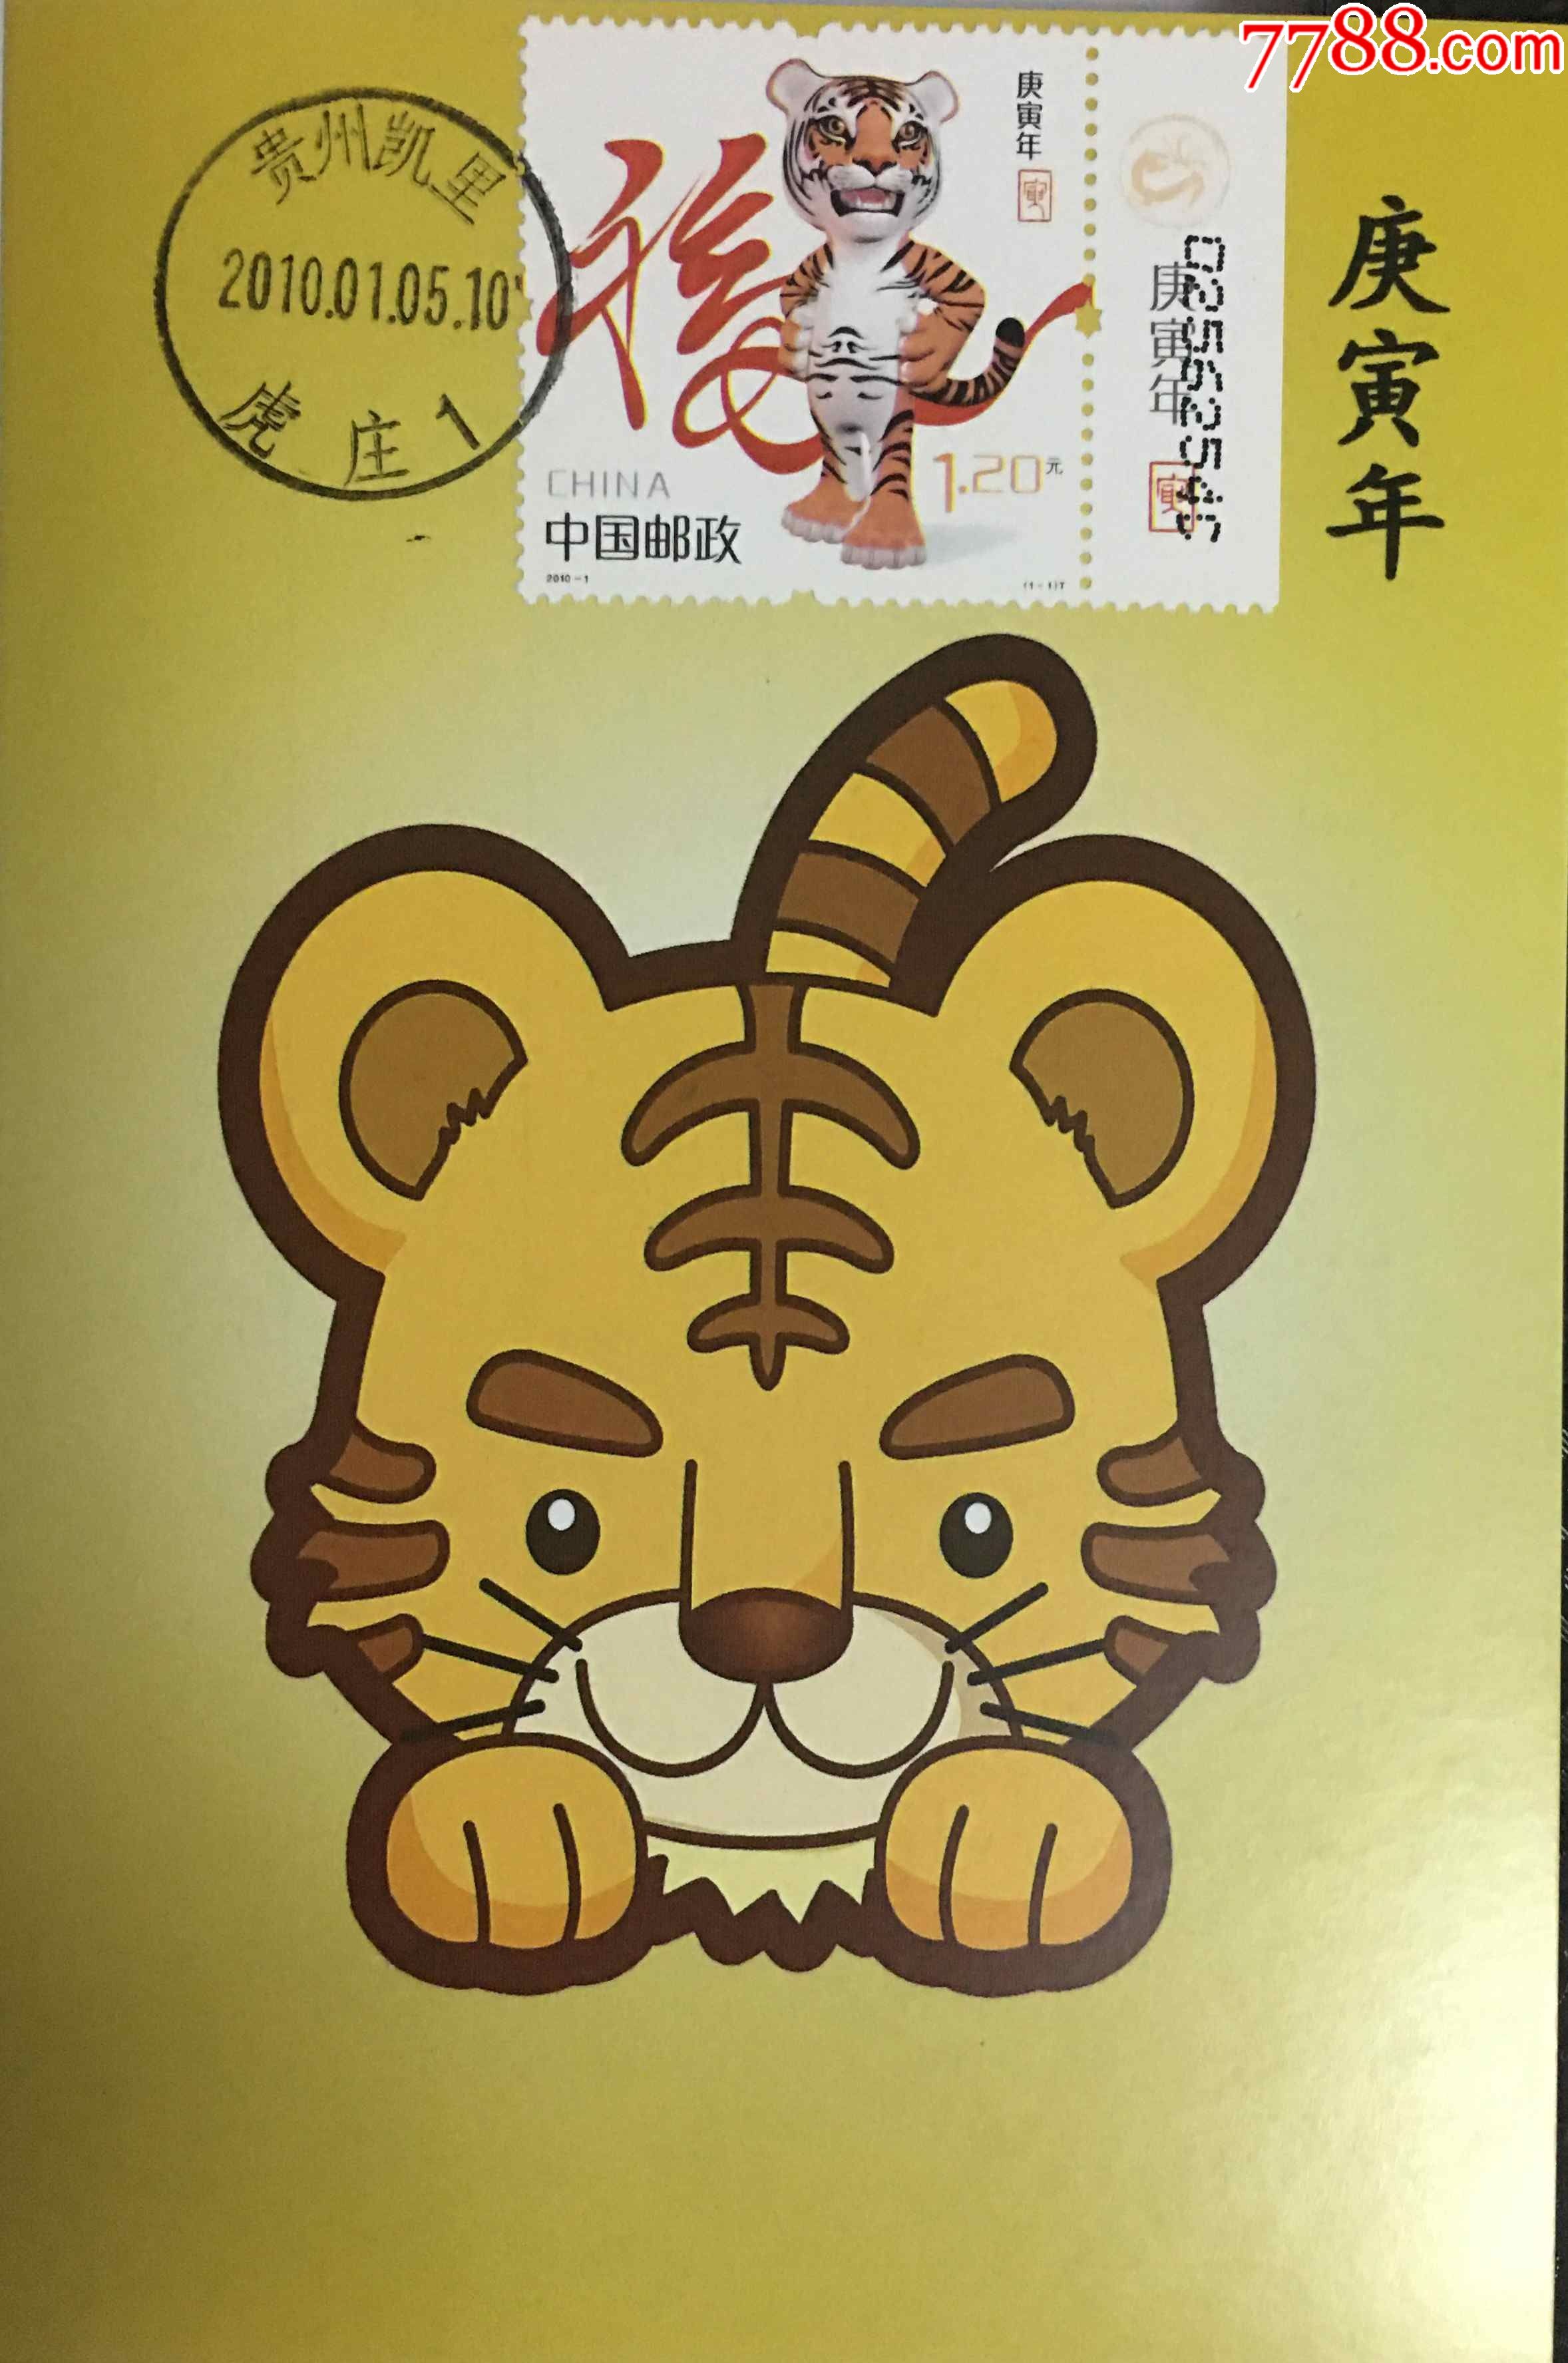 虎年邮票设计一等奖图片